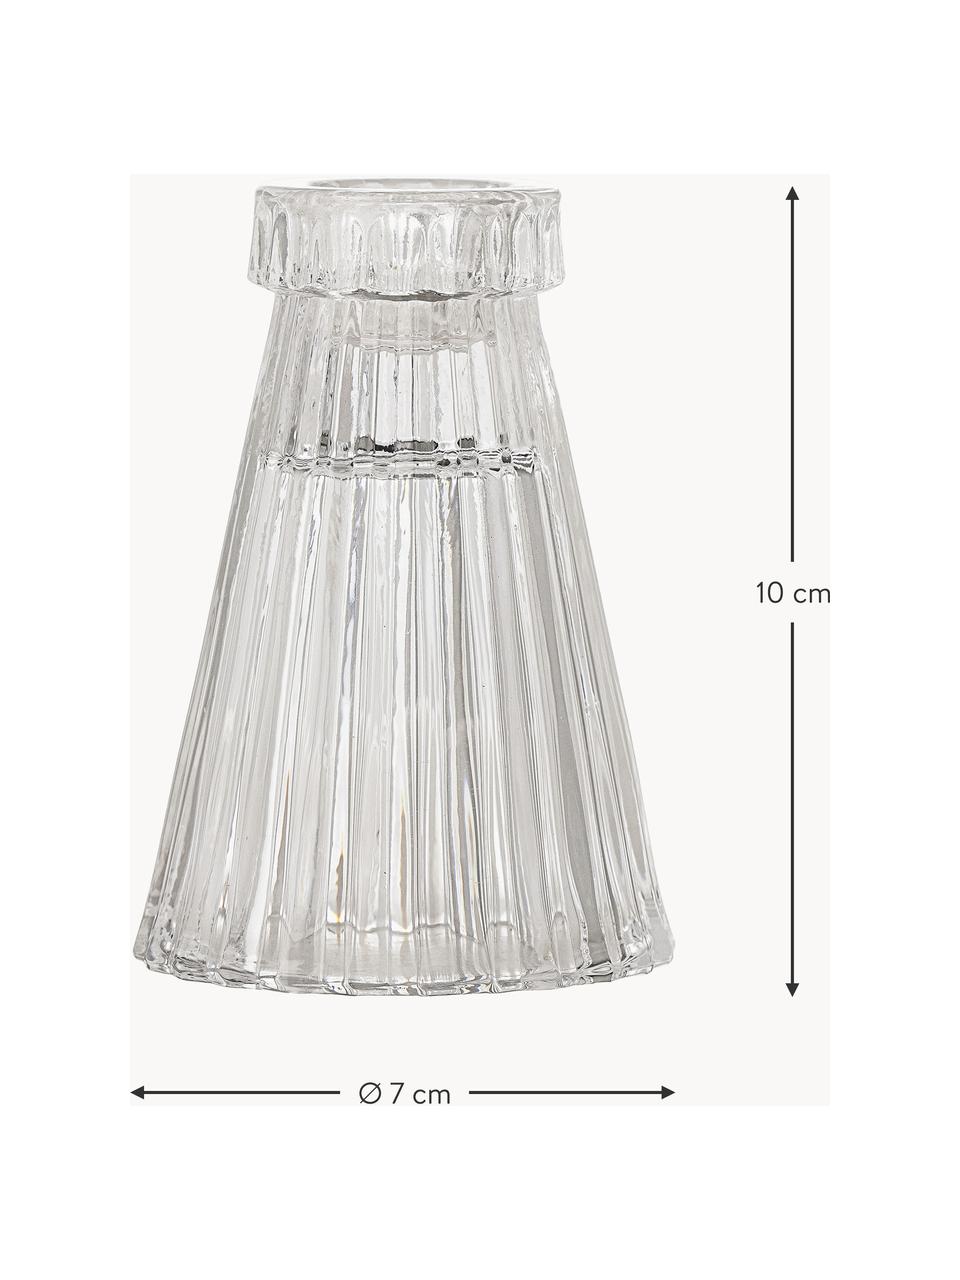 Kerstkandelaar Saynab met groefreliëf, Glas, Transparant, Ø 7 x H 10 cm